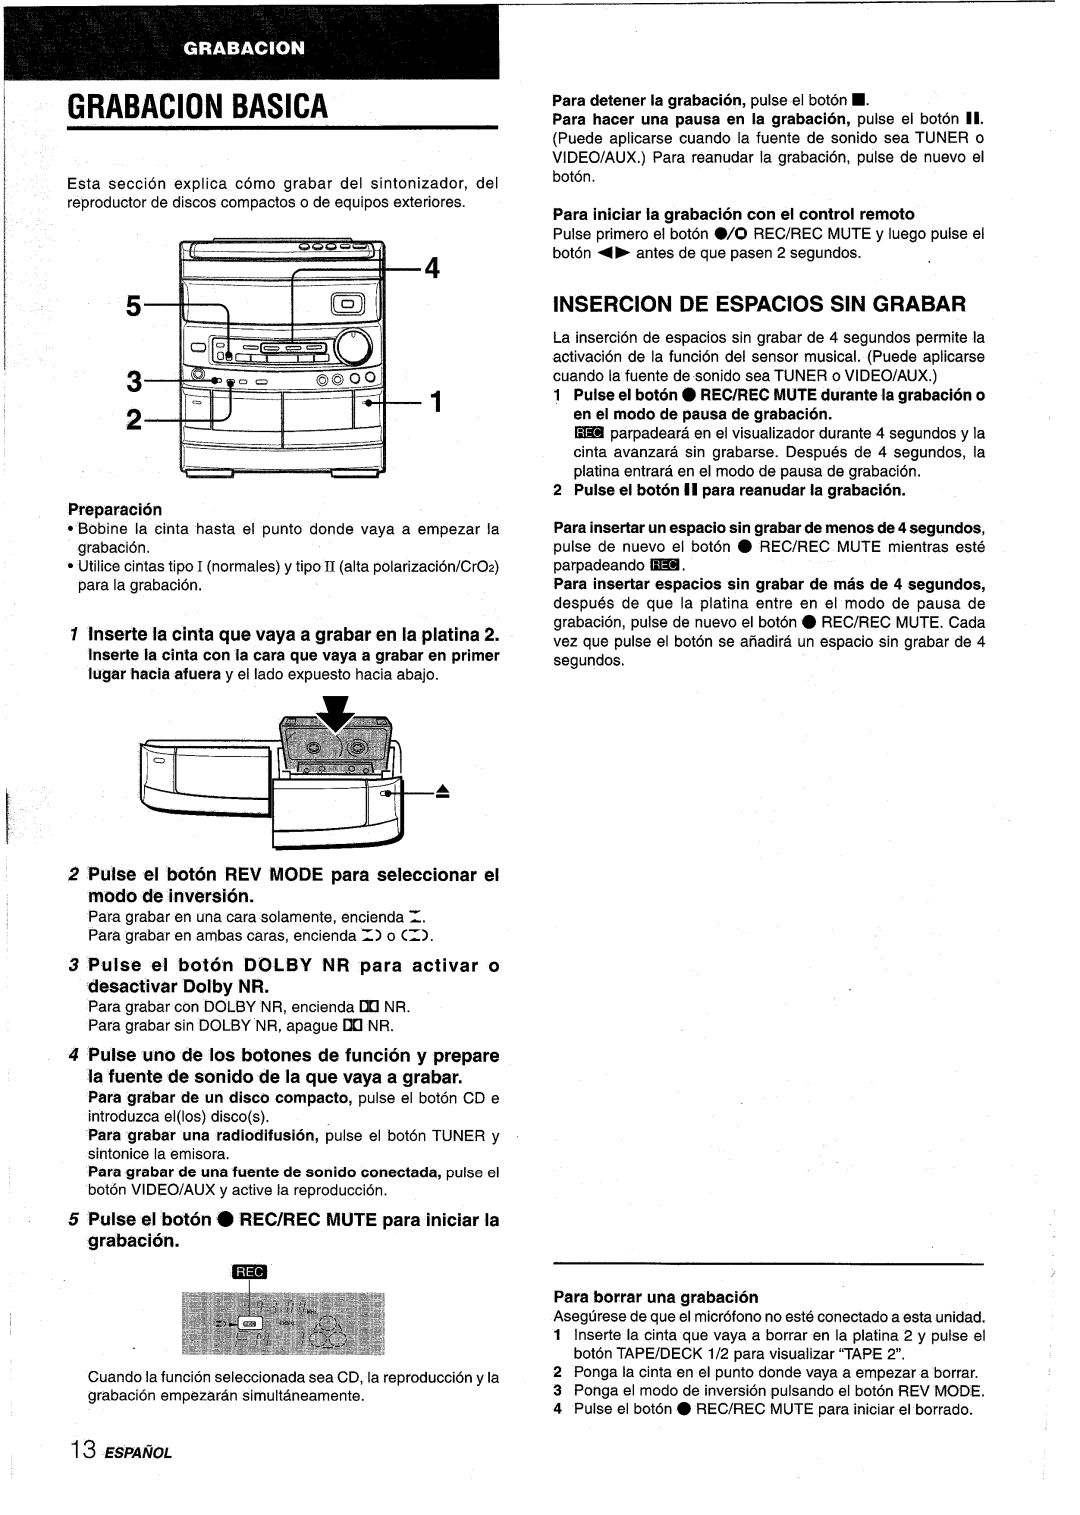 Aiwa NSX-AV800 manual Basica, Grabacion, Insercion De Espacios Sin Grabar, Para iniciar la grabacion con el control remoto 